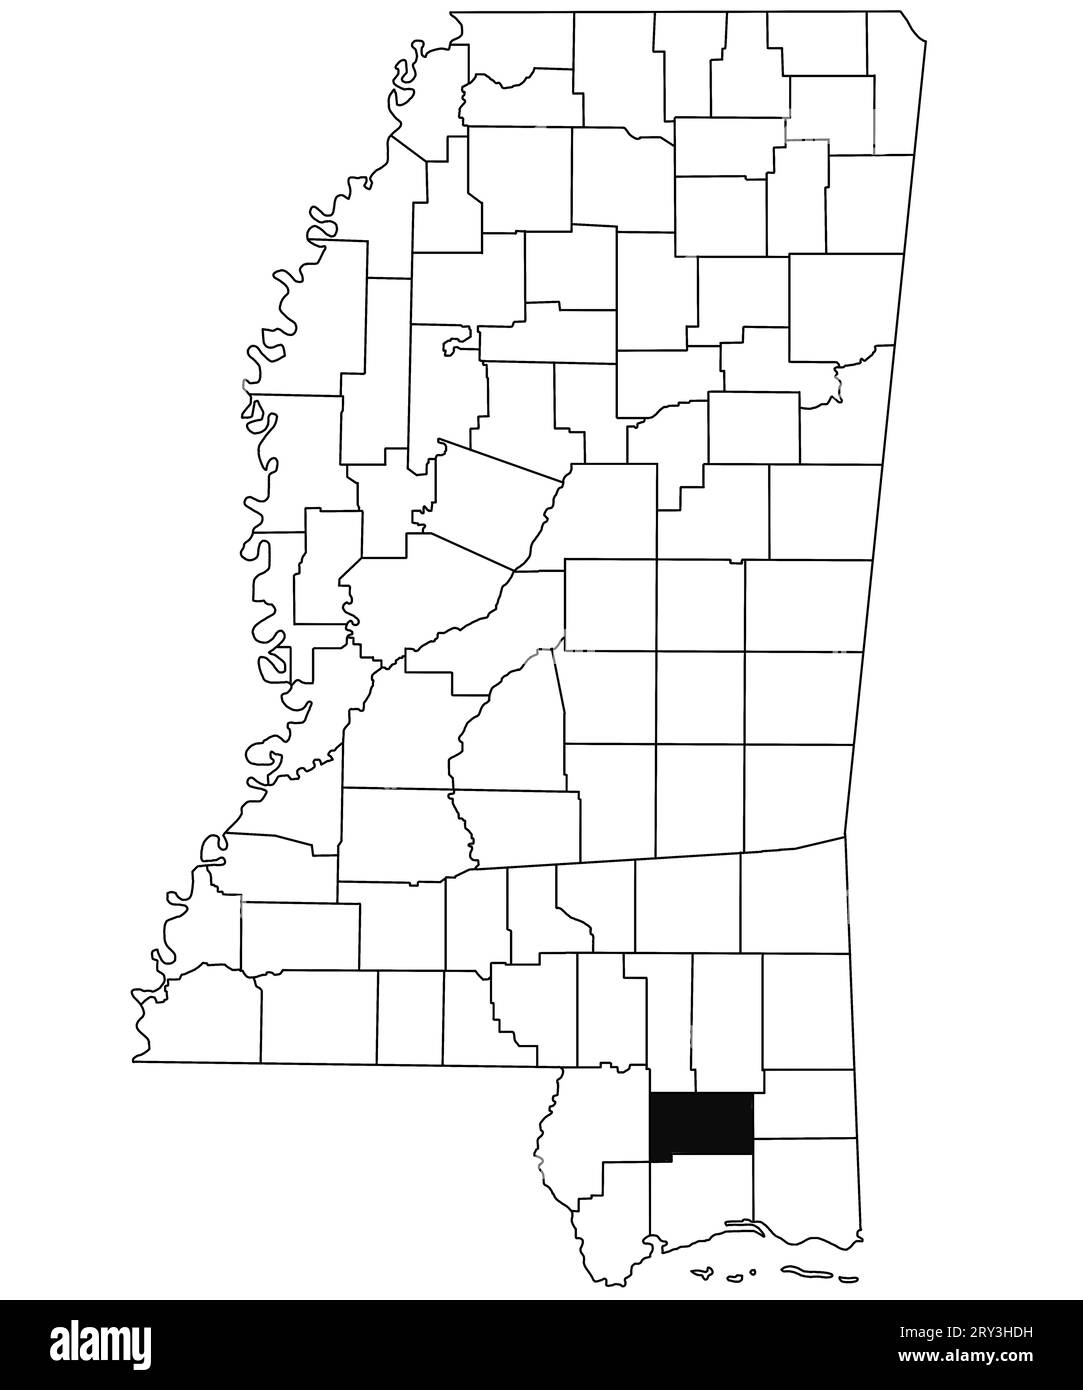 Mappa della contea di Stone nello stato del Mississippi su sfondo bianco. Mappa singola della contea evidenziata in nero sulla mappa del Mississippi. Stati Uniti d'America Foto Stock